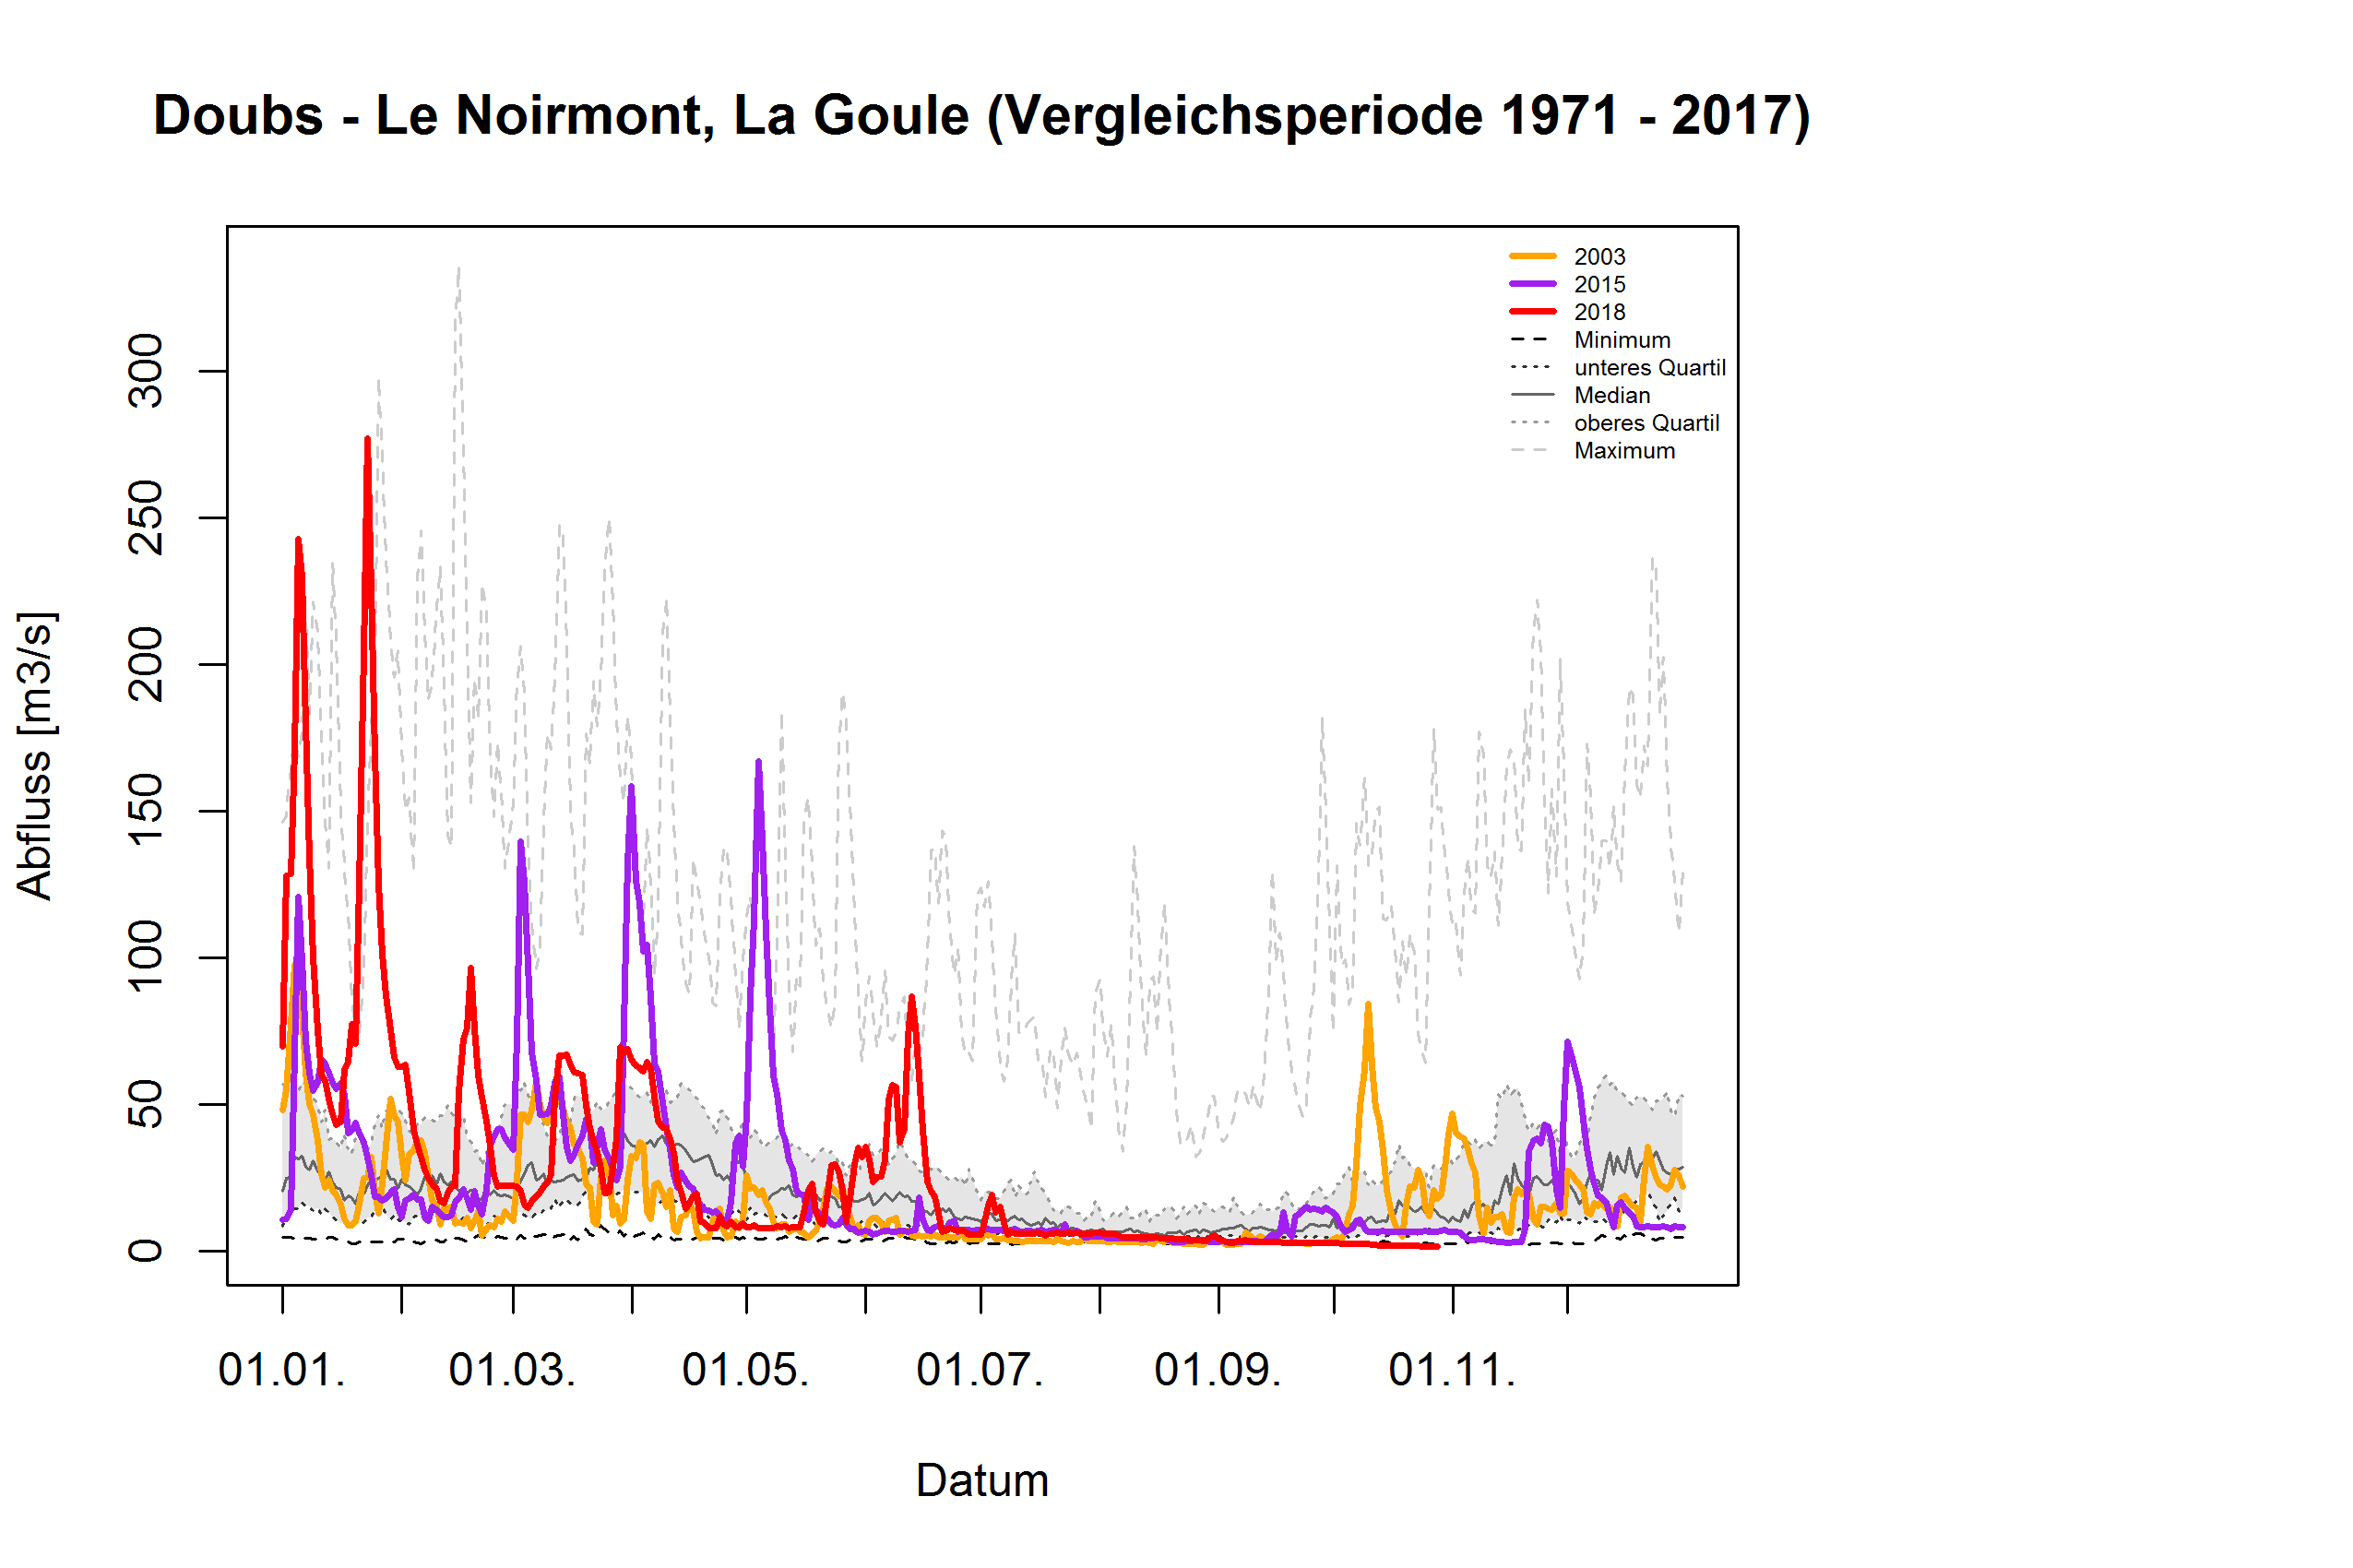 Doubs - Le Noirmont, La Goule: Vergleichsperiode 1971 - 2017